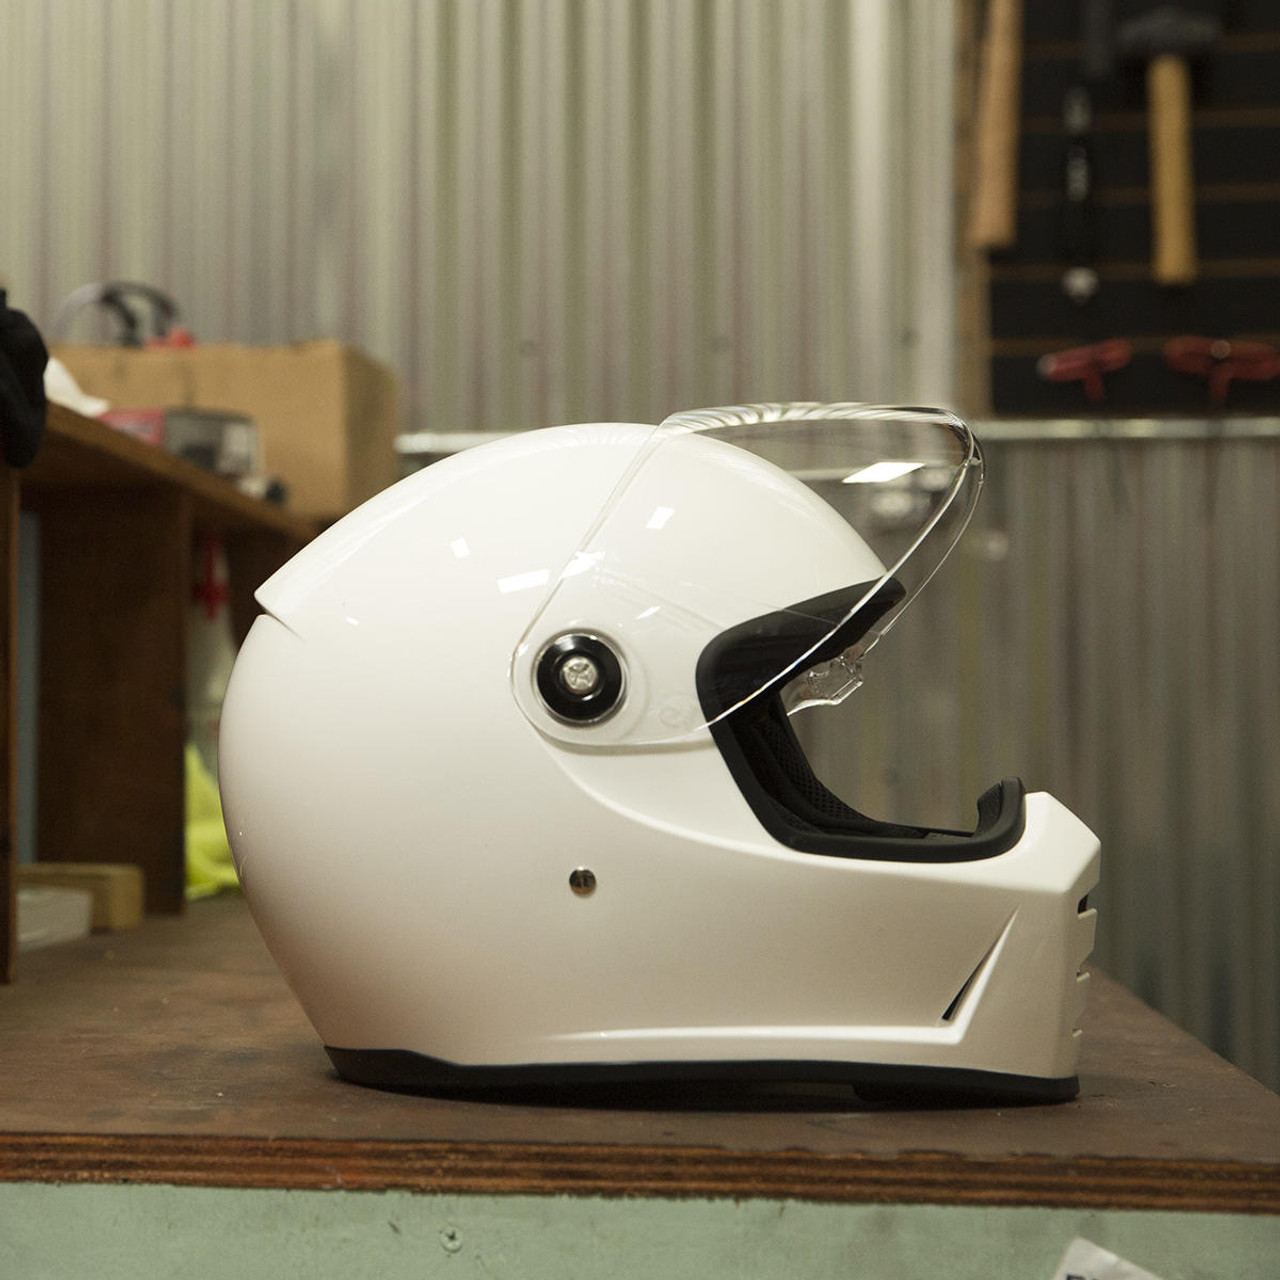 Gloss White Small 01019940 Biltwell Lane Splitter Solid Full-face Motorcycle Helmet 